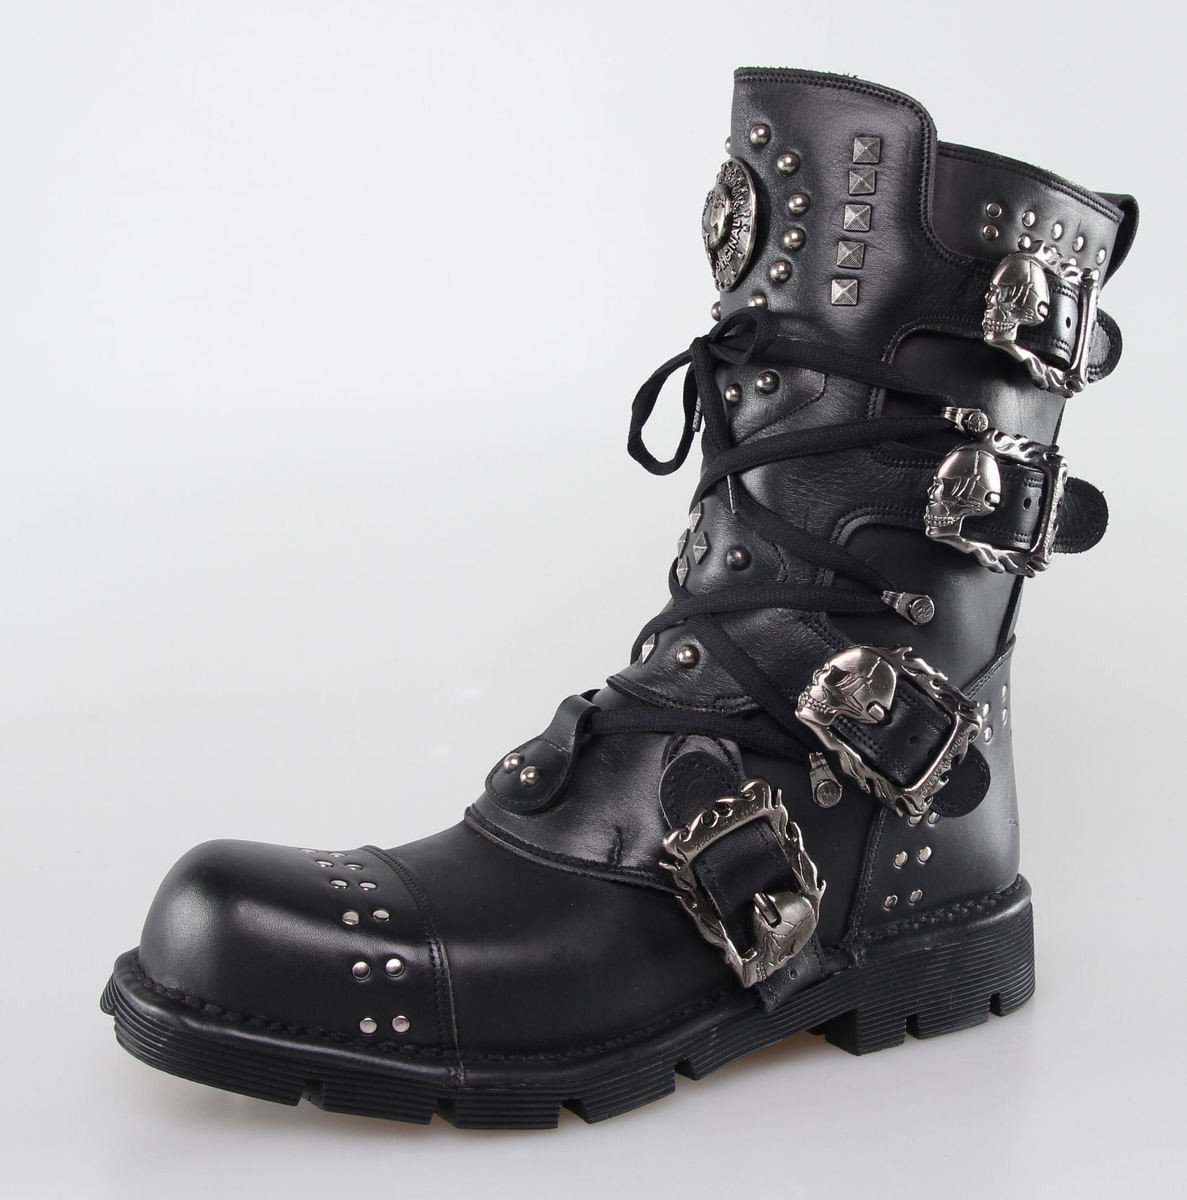 boty kožené dámské - 1474-S1 - NEW ROCK - M.1474-S1 37